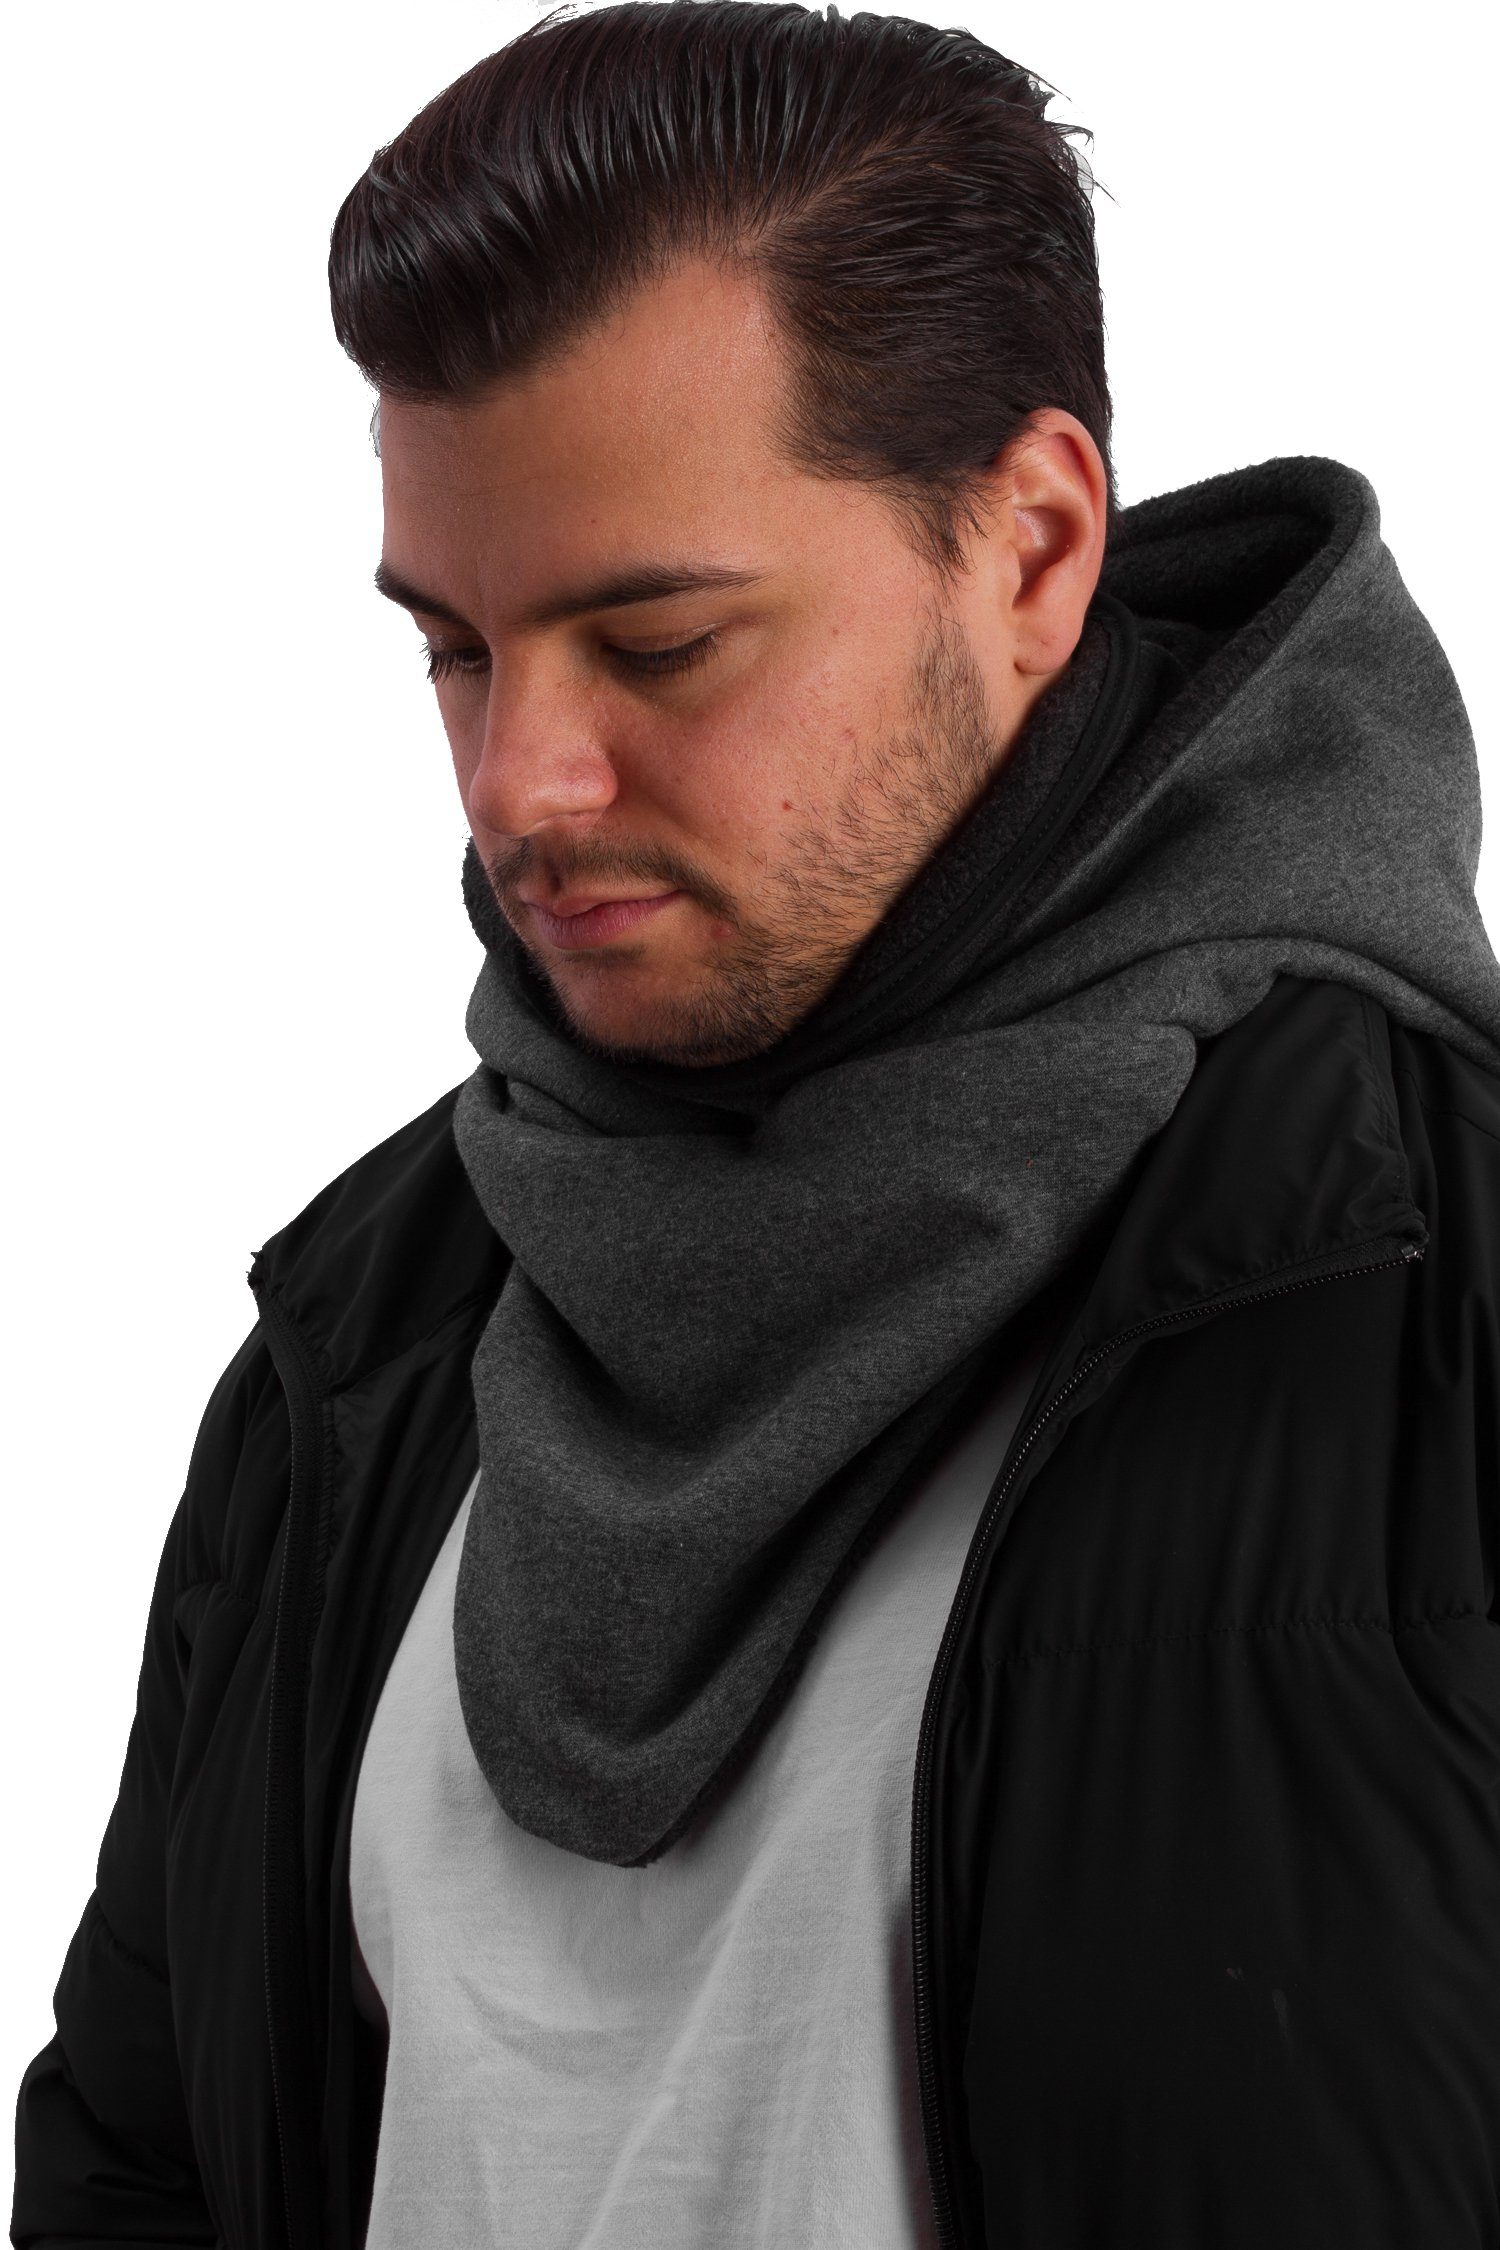 Manufaktur13 Schal Hooded Loop aus Rough Schal mit Kapuzenschal, Alpenfleece, integriertem - Windbreaker Dark